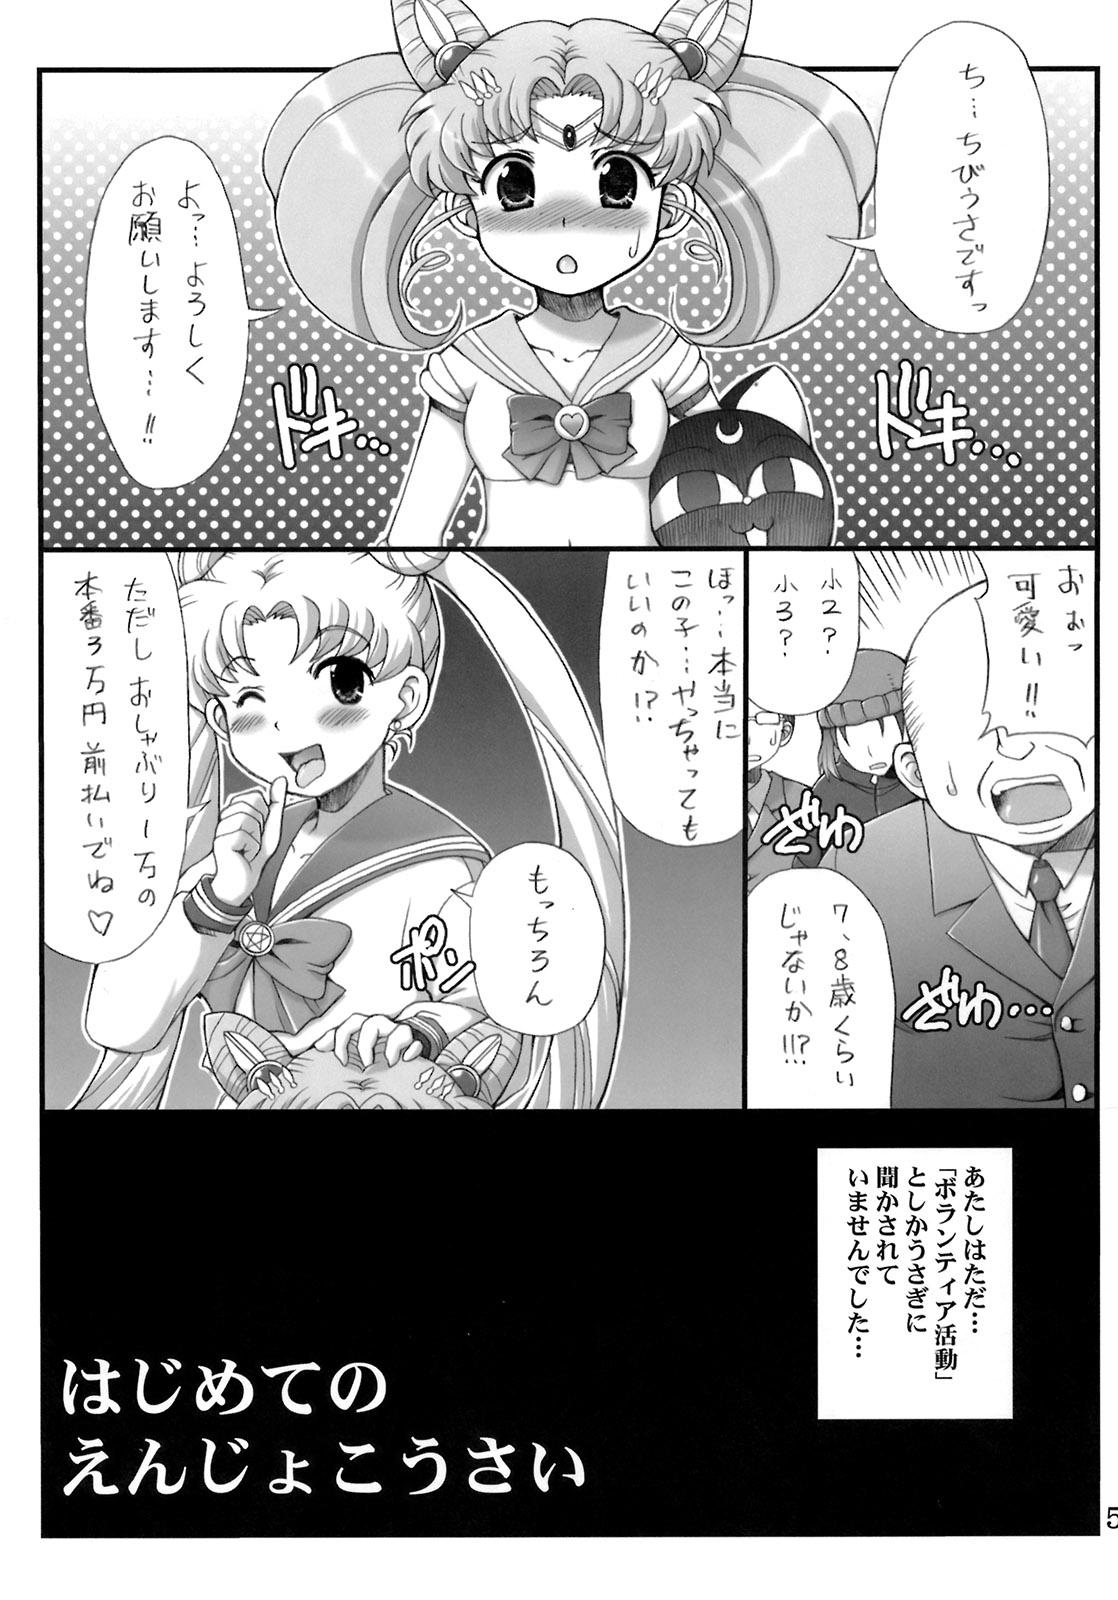 Closeups Lovely Battle Suit HALF & HALF - Sailor moon Sakura taisen Real Amateurs - Page 4